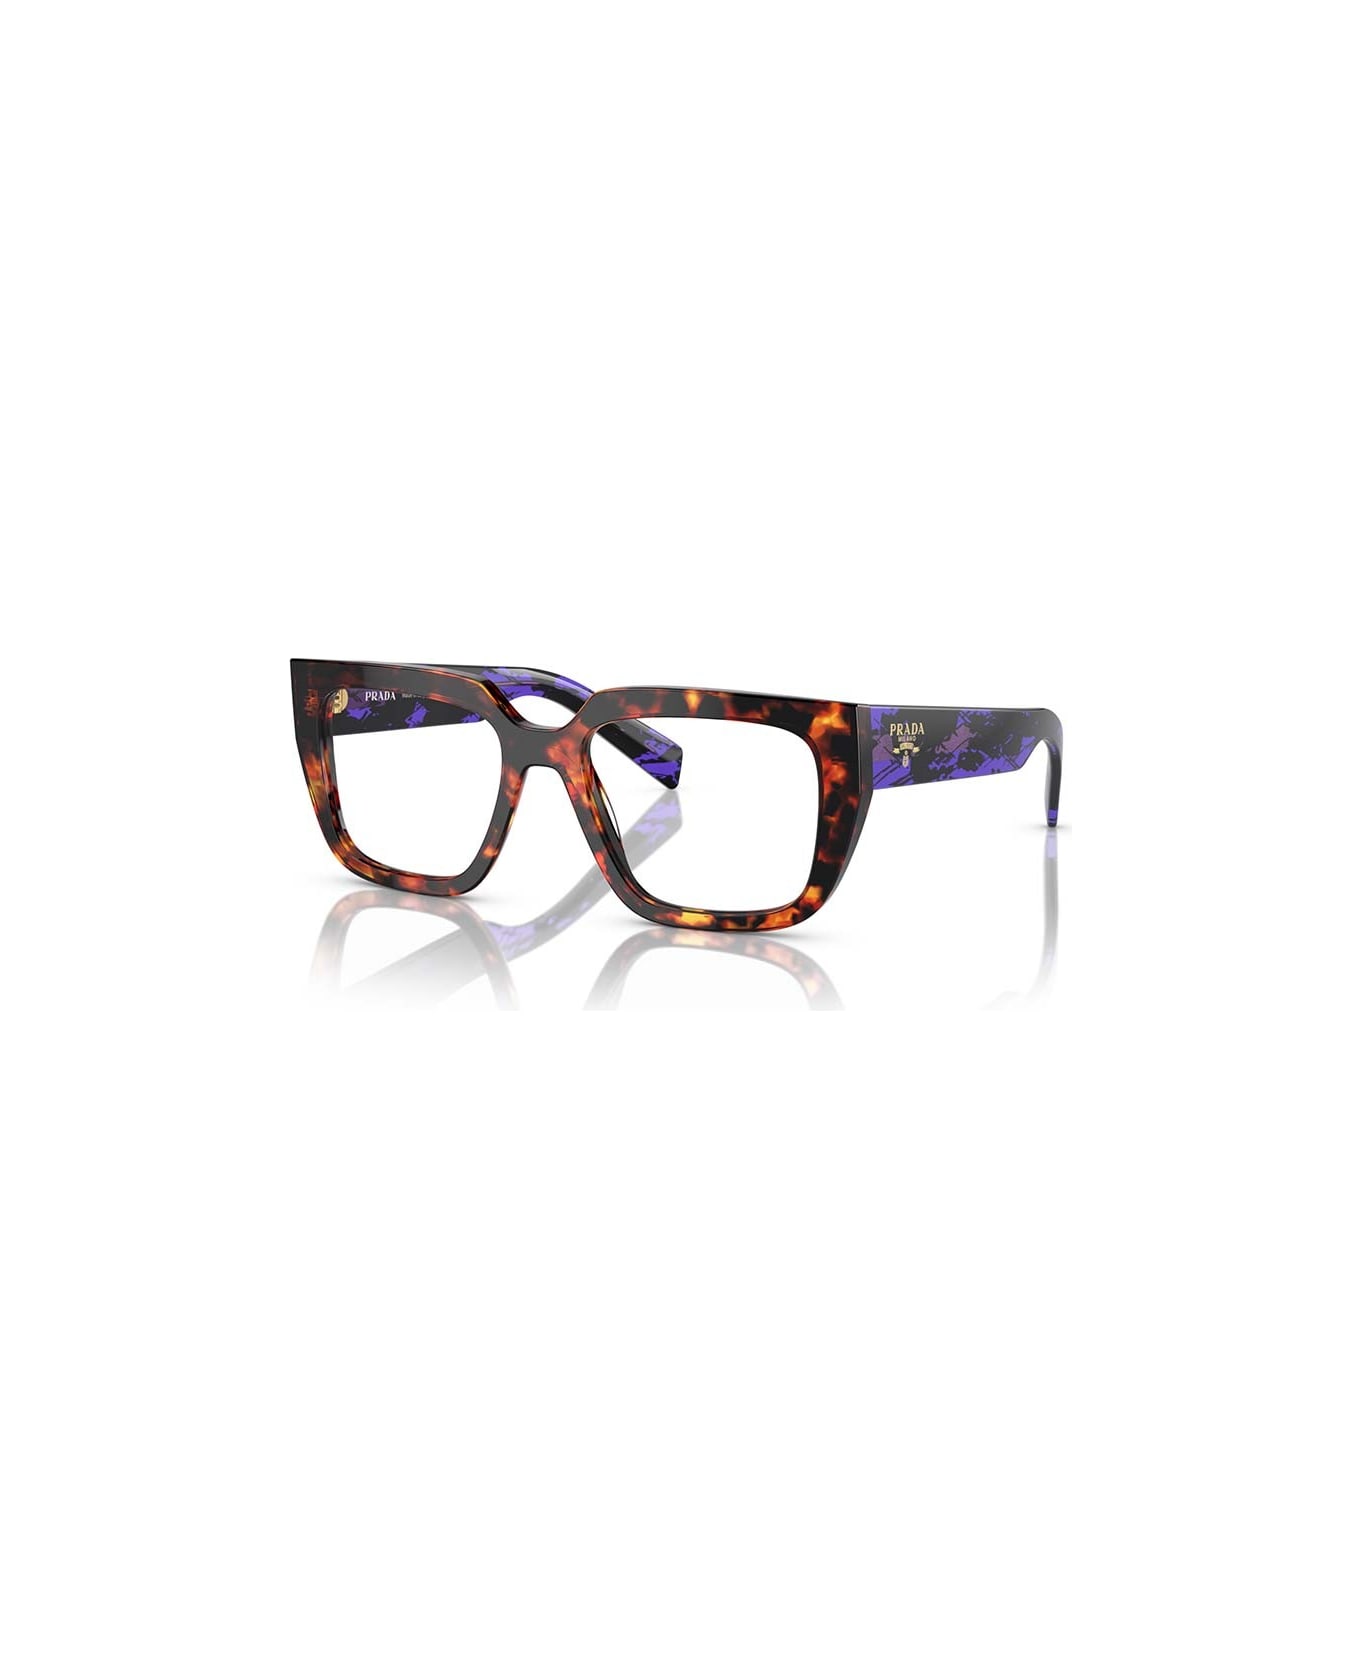 Prada Eyewear Glasses - 14O1O1 アイウェア